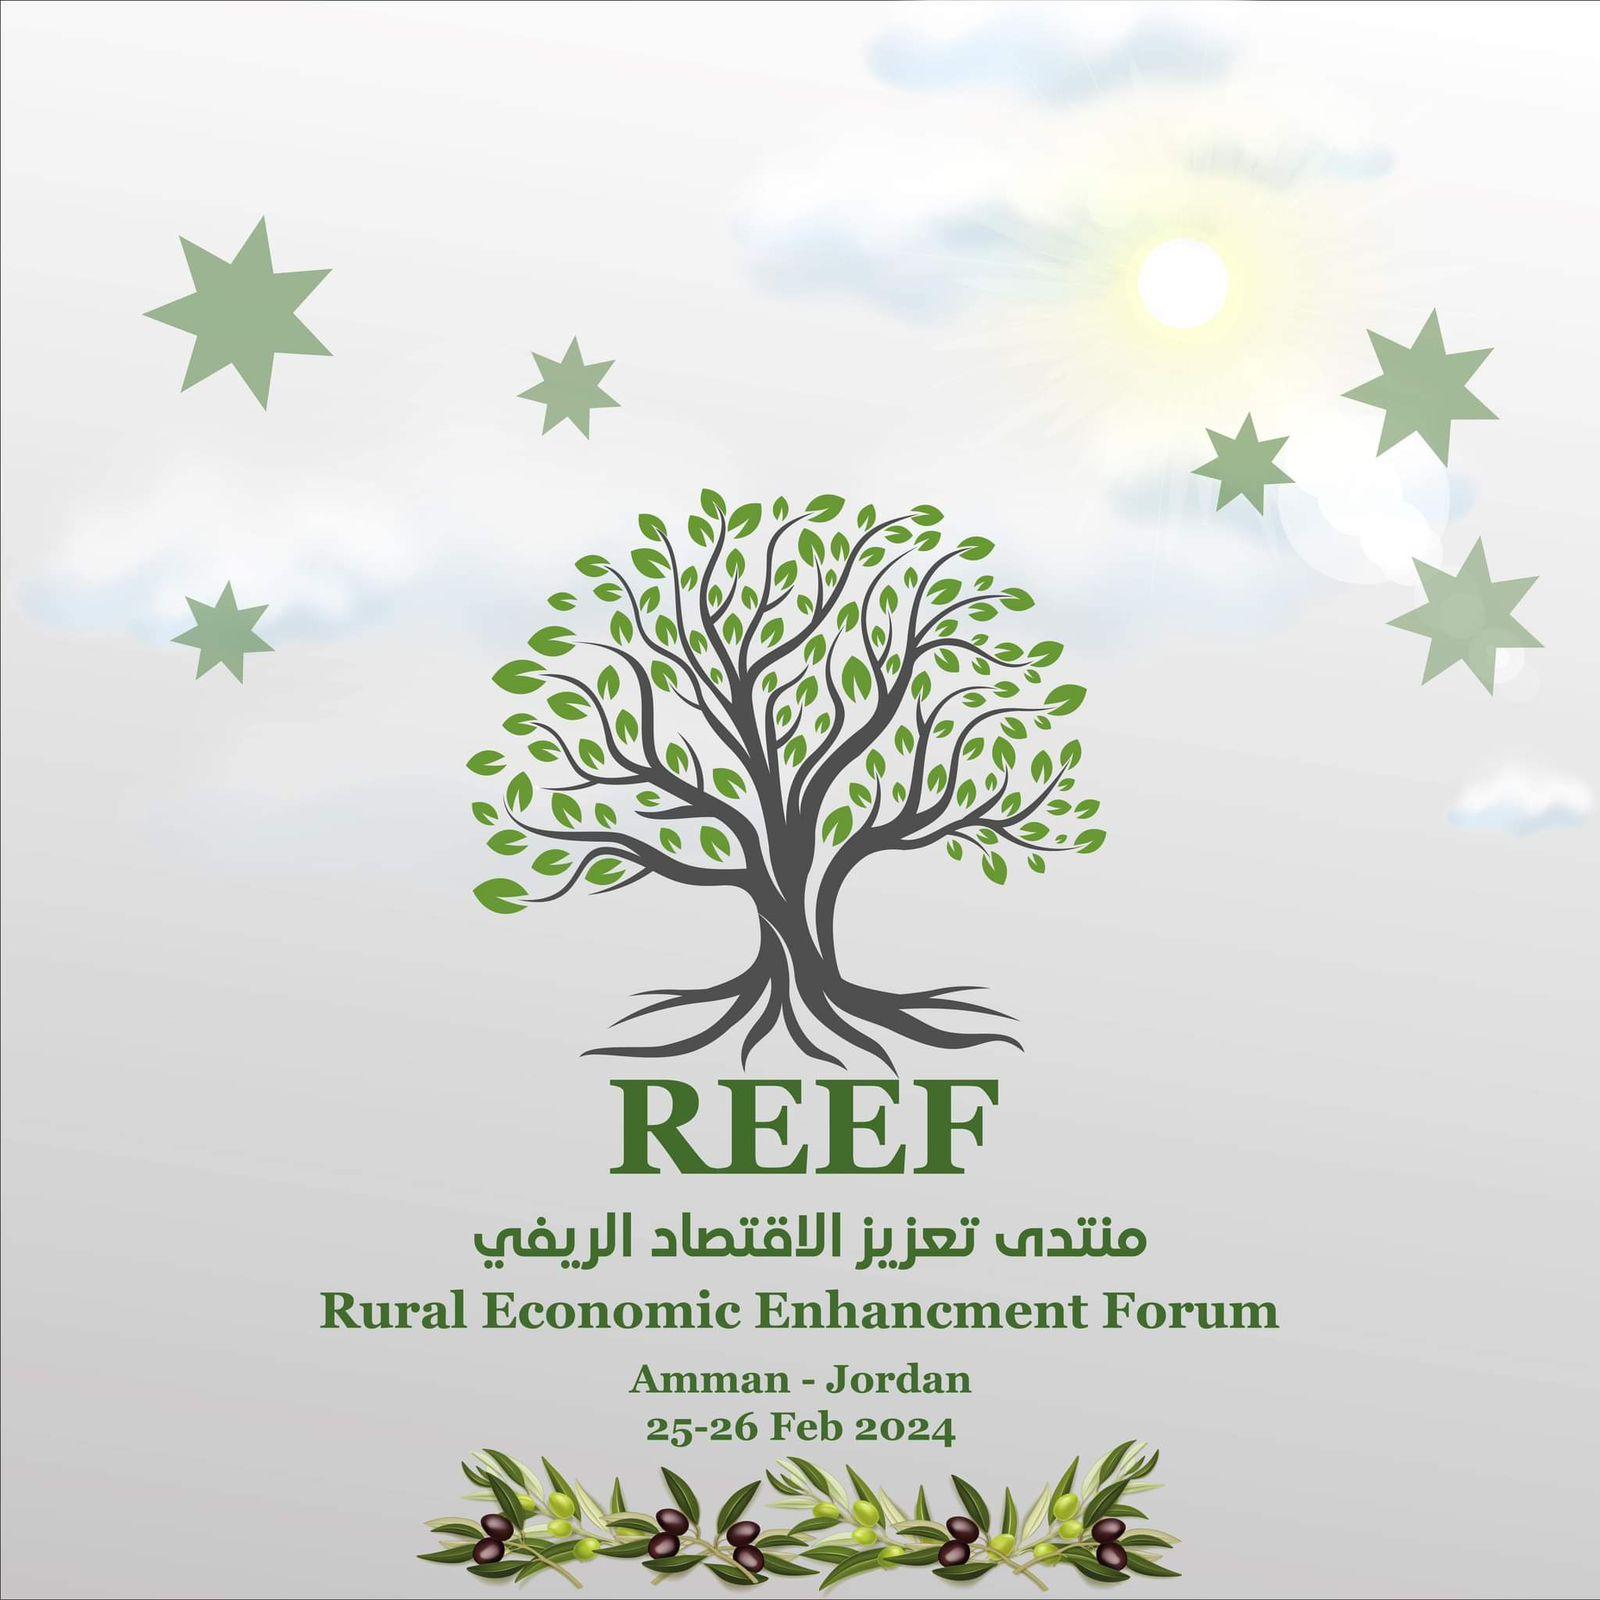 منتدى حول سبل تعزيز وتنمية الاقتصاد الريفي بالأردن الشهر المقبل